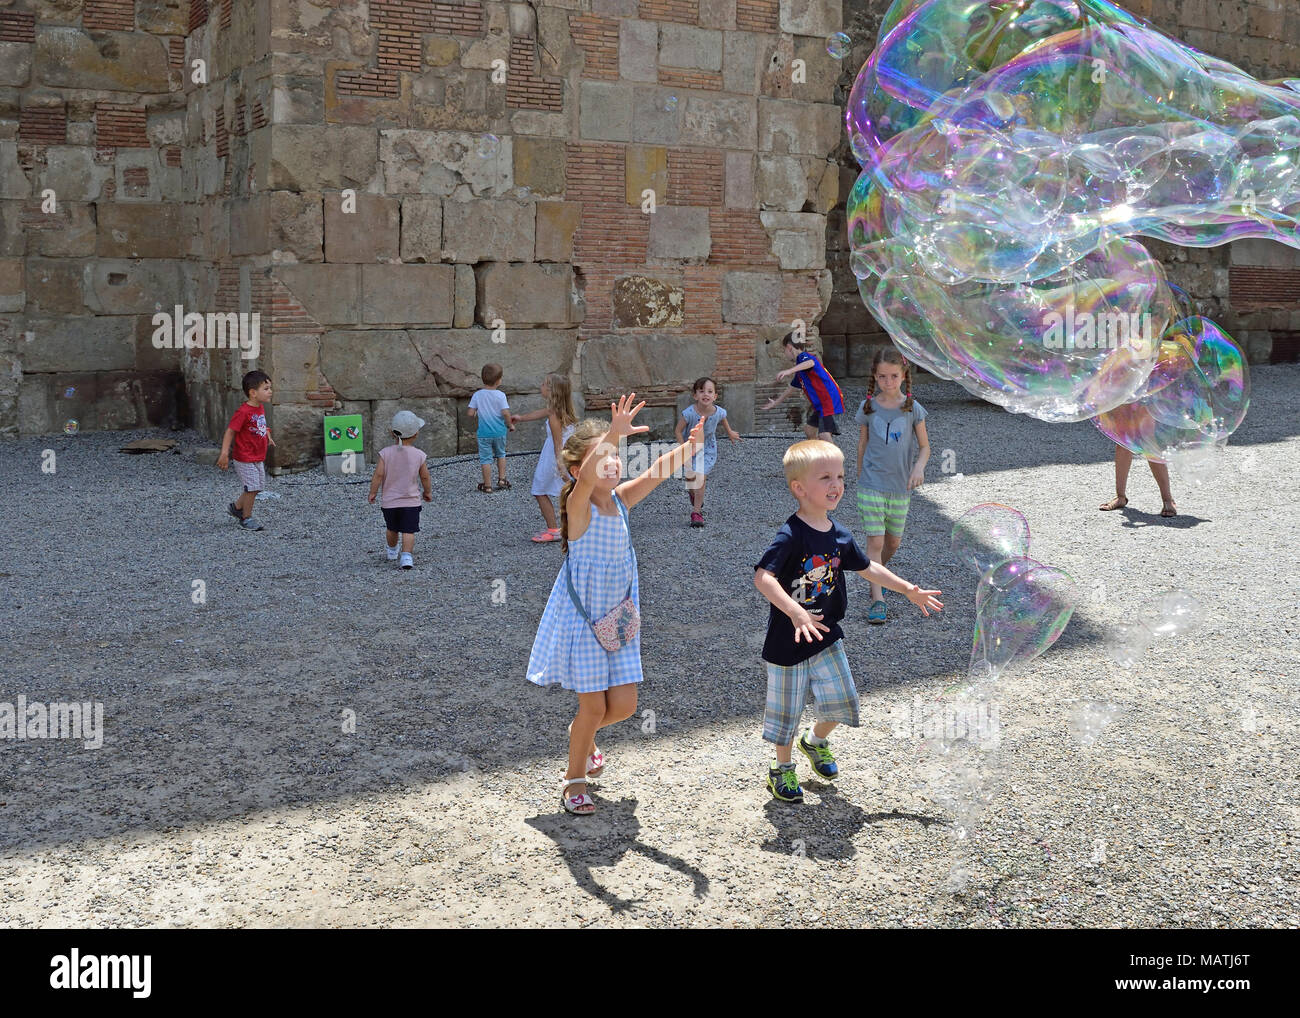 Barcelona, Katalonien, Spanien, Europa. 30. 06. 2017. Kinder spielen mit Luftblasen im Gotischen Viertel in Barcelona. Stockfoto